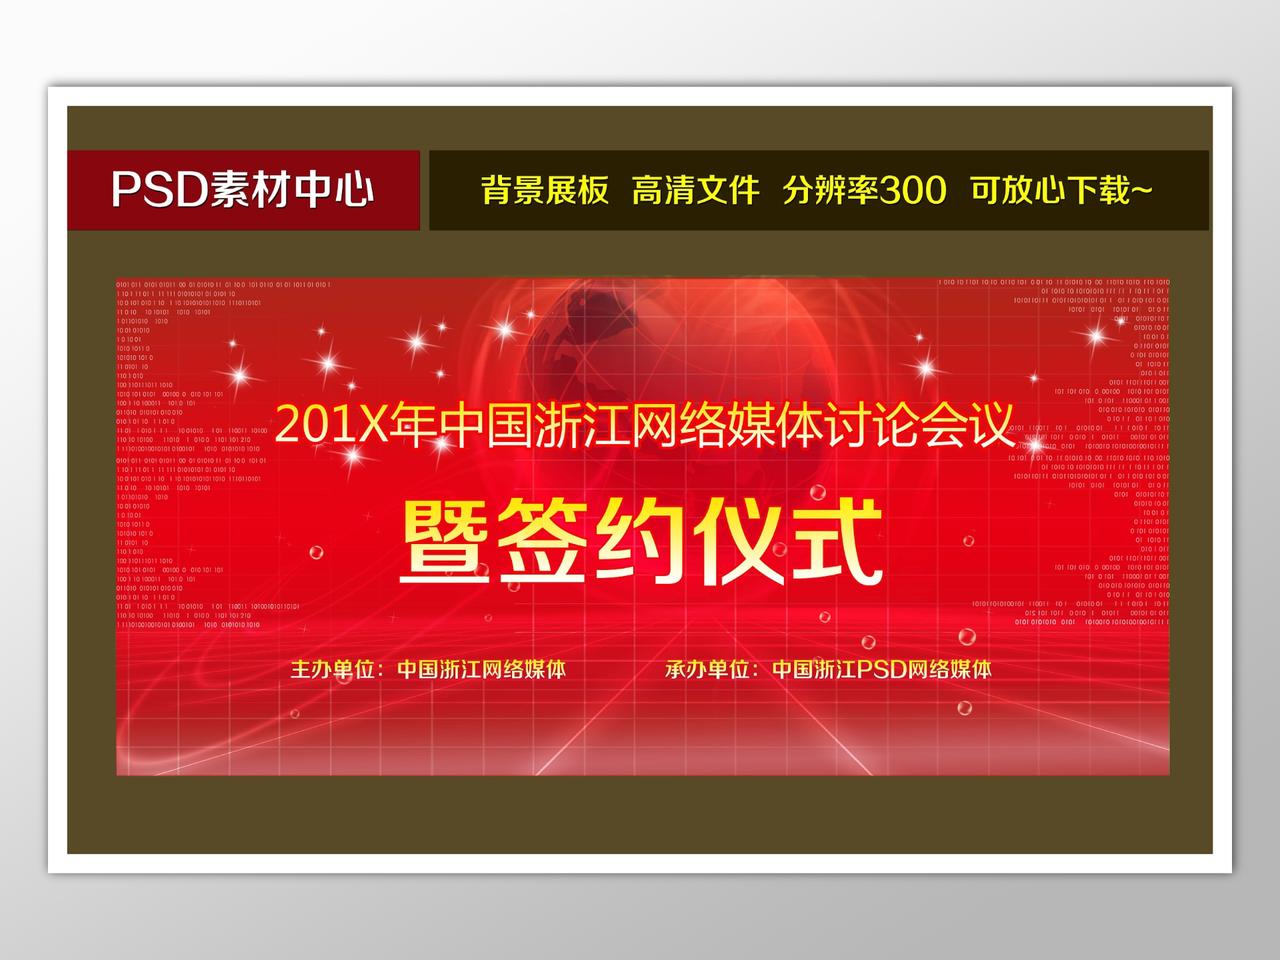 网络媒体讨论会议签约仪式背景红色大气喜庆海报模板